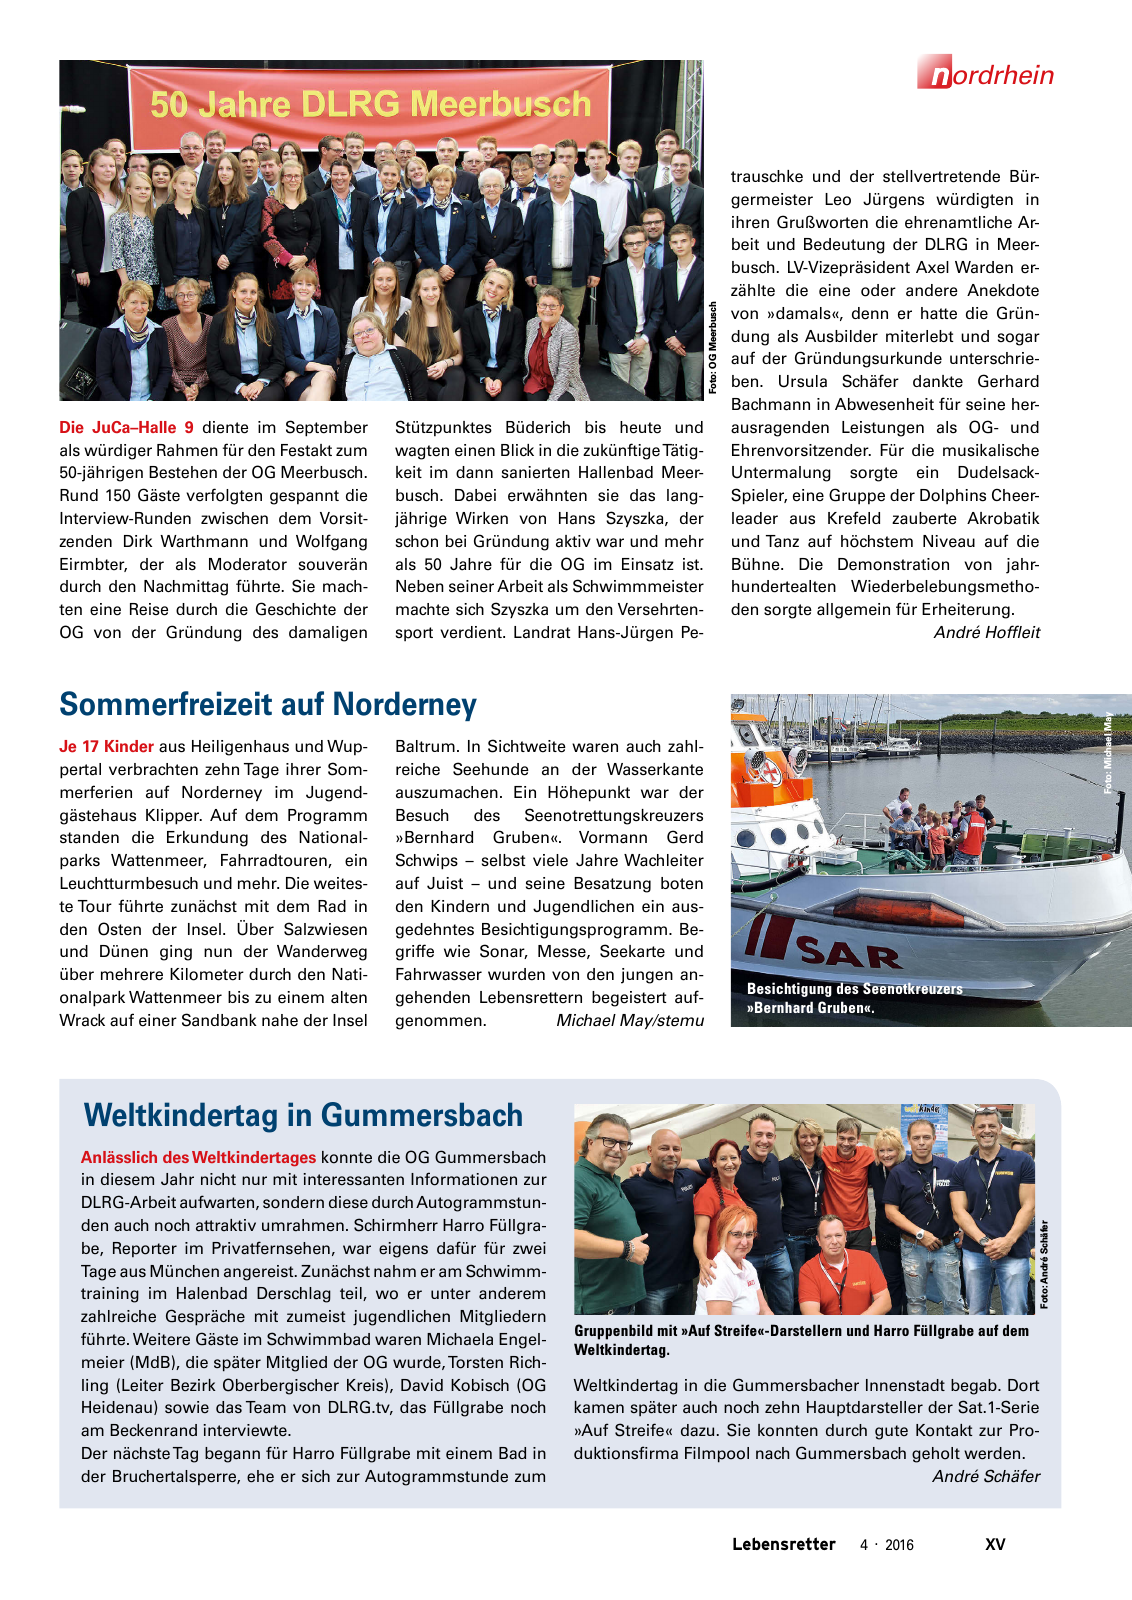 Vorschau Lebensretter 4/2016 - Regionalausgabe Nordrhein Seite 17